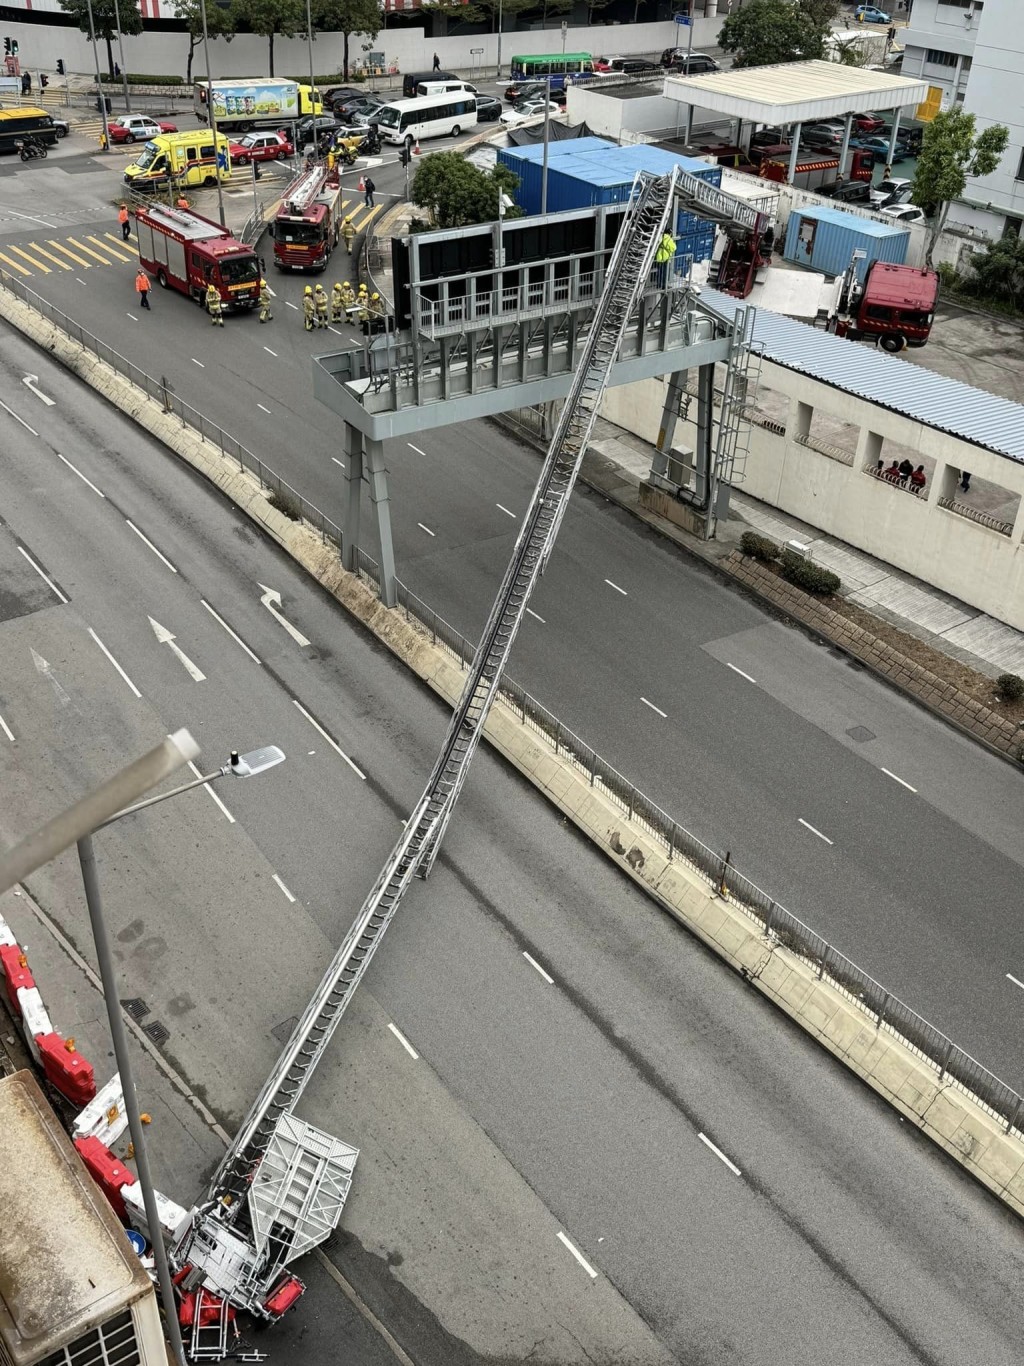 云梯撞到路中巨型指示牌曲折。fb：香港交通及突发事故报料区